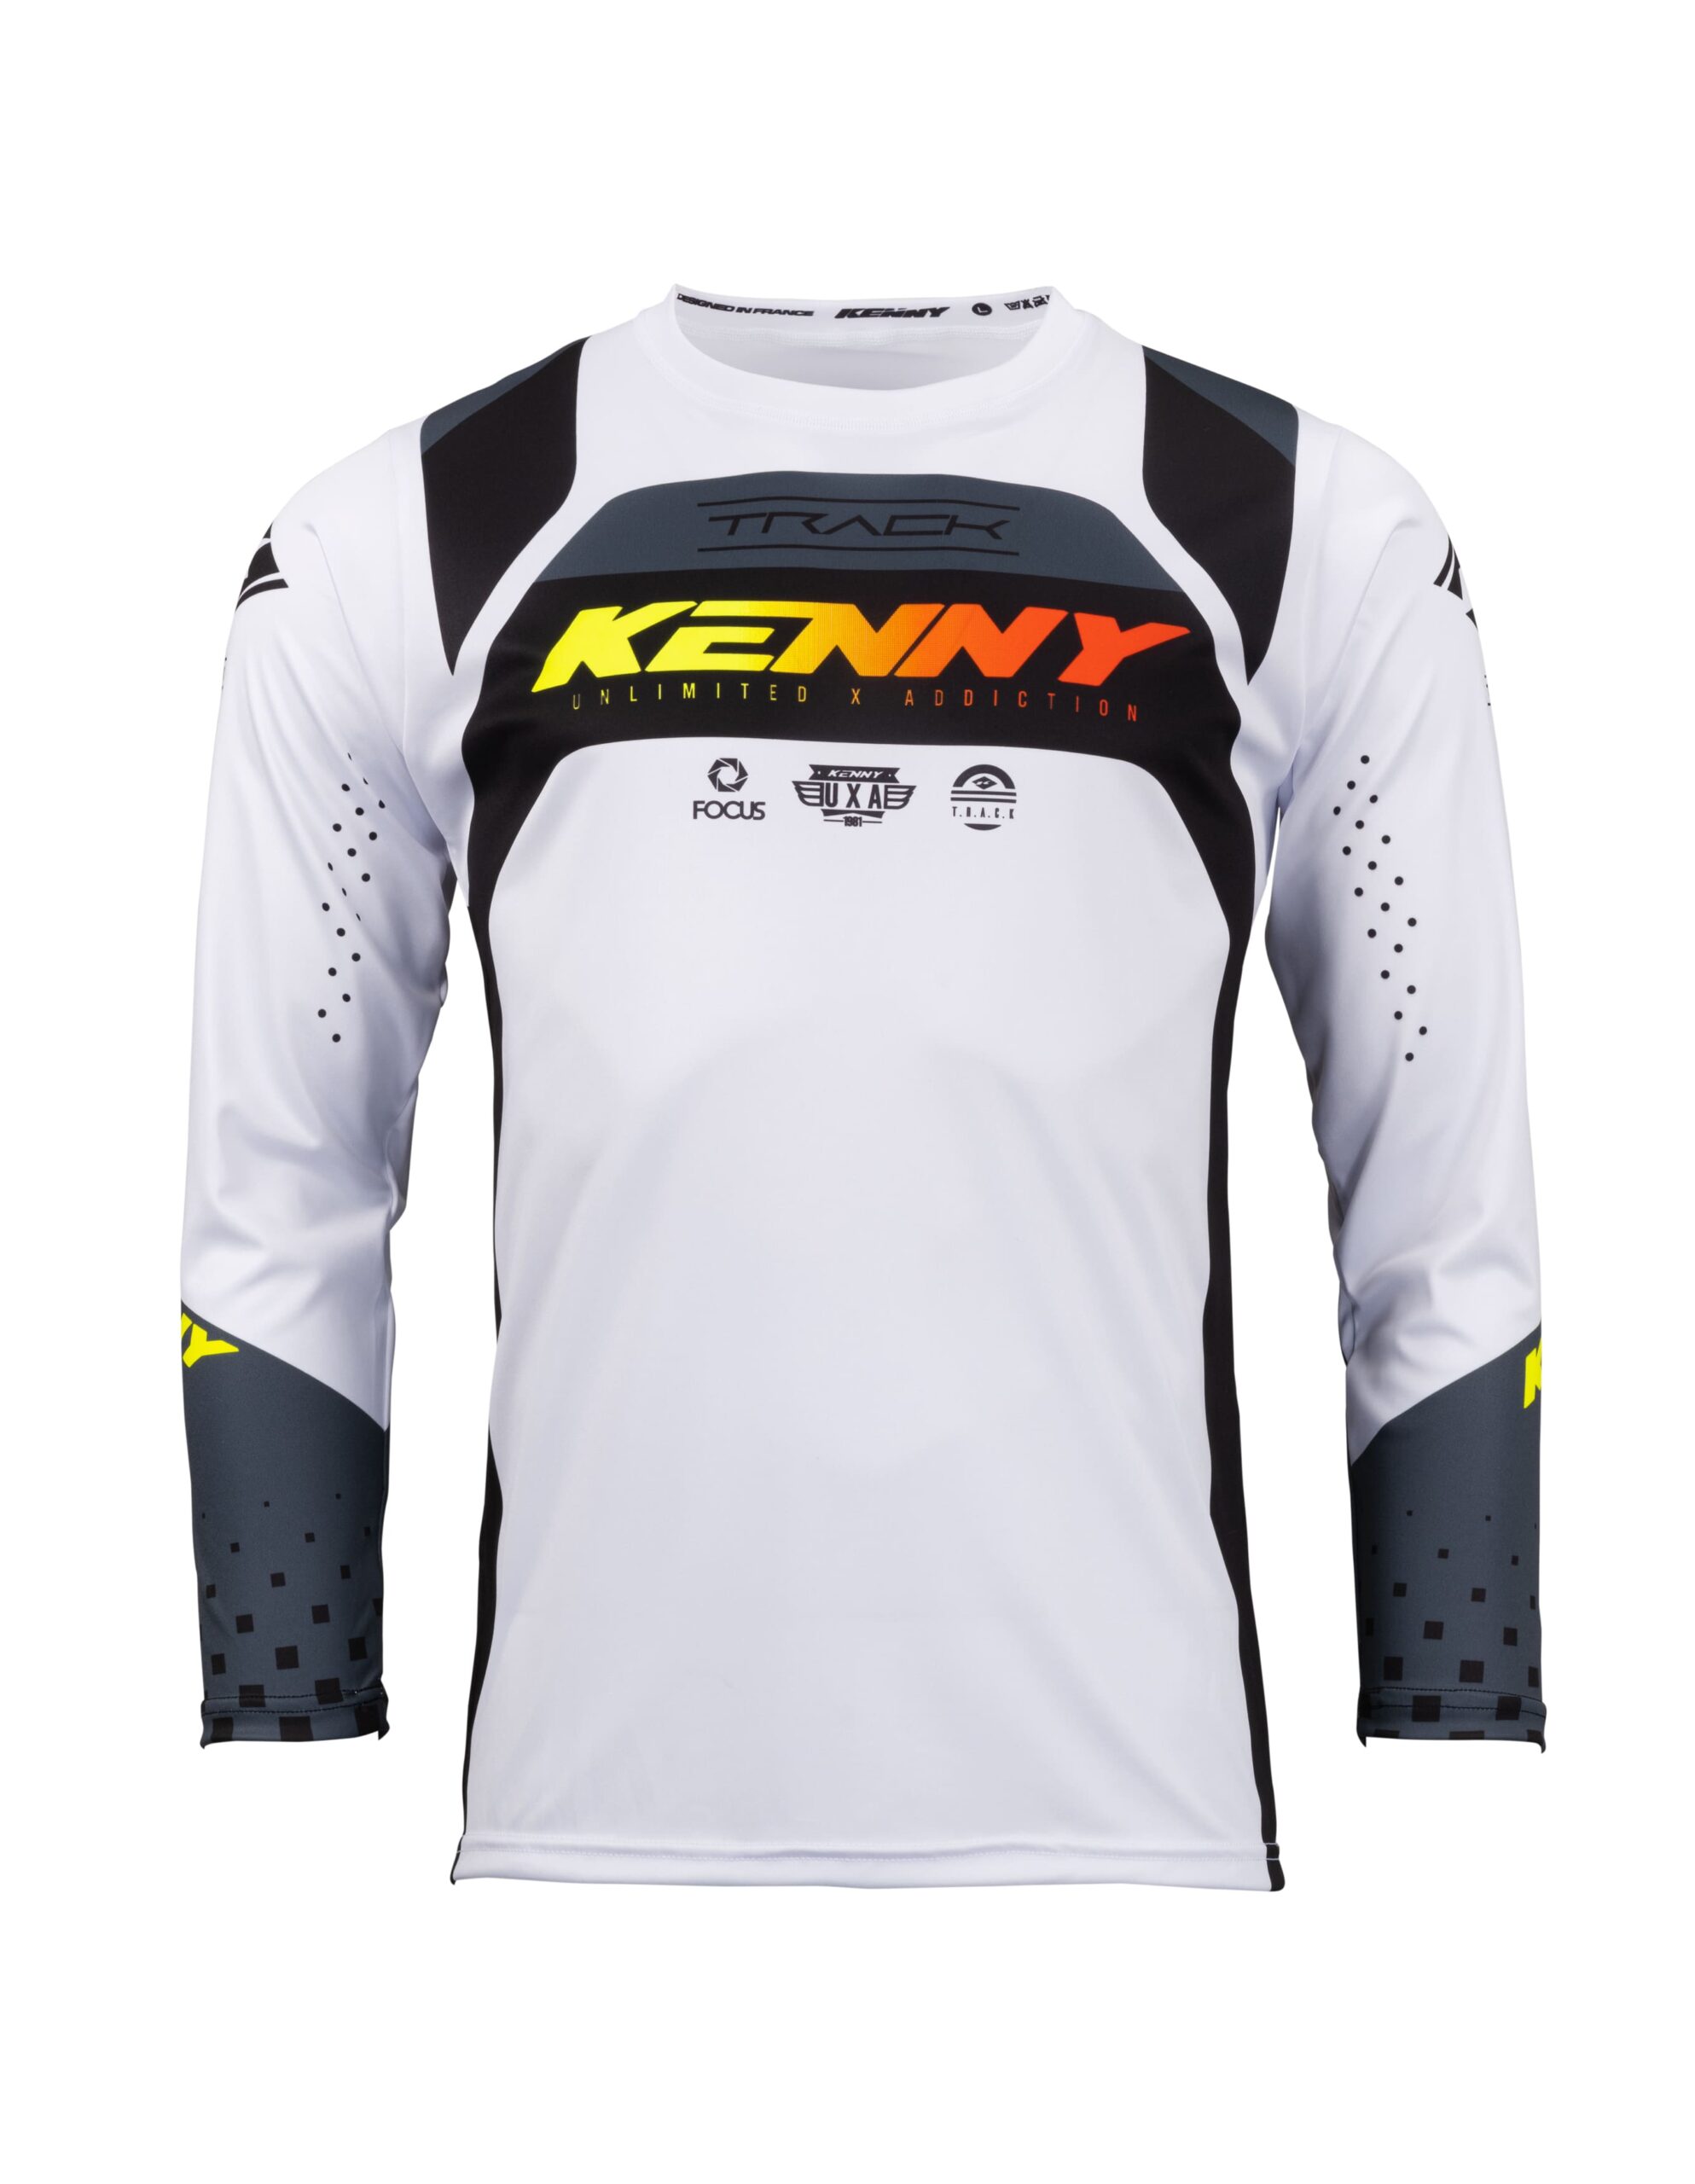 maillot_motocross_kenny_track_focus_black_white(24)